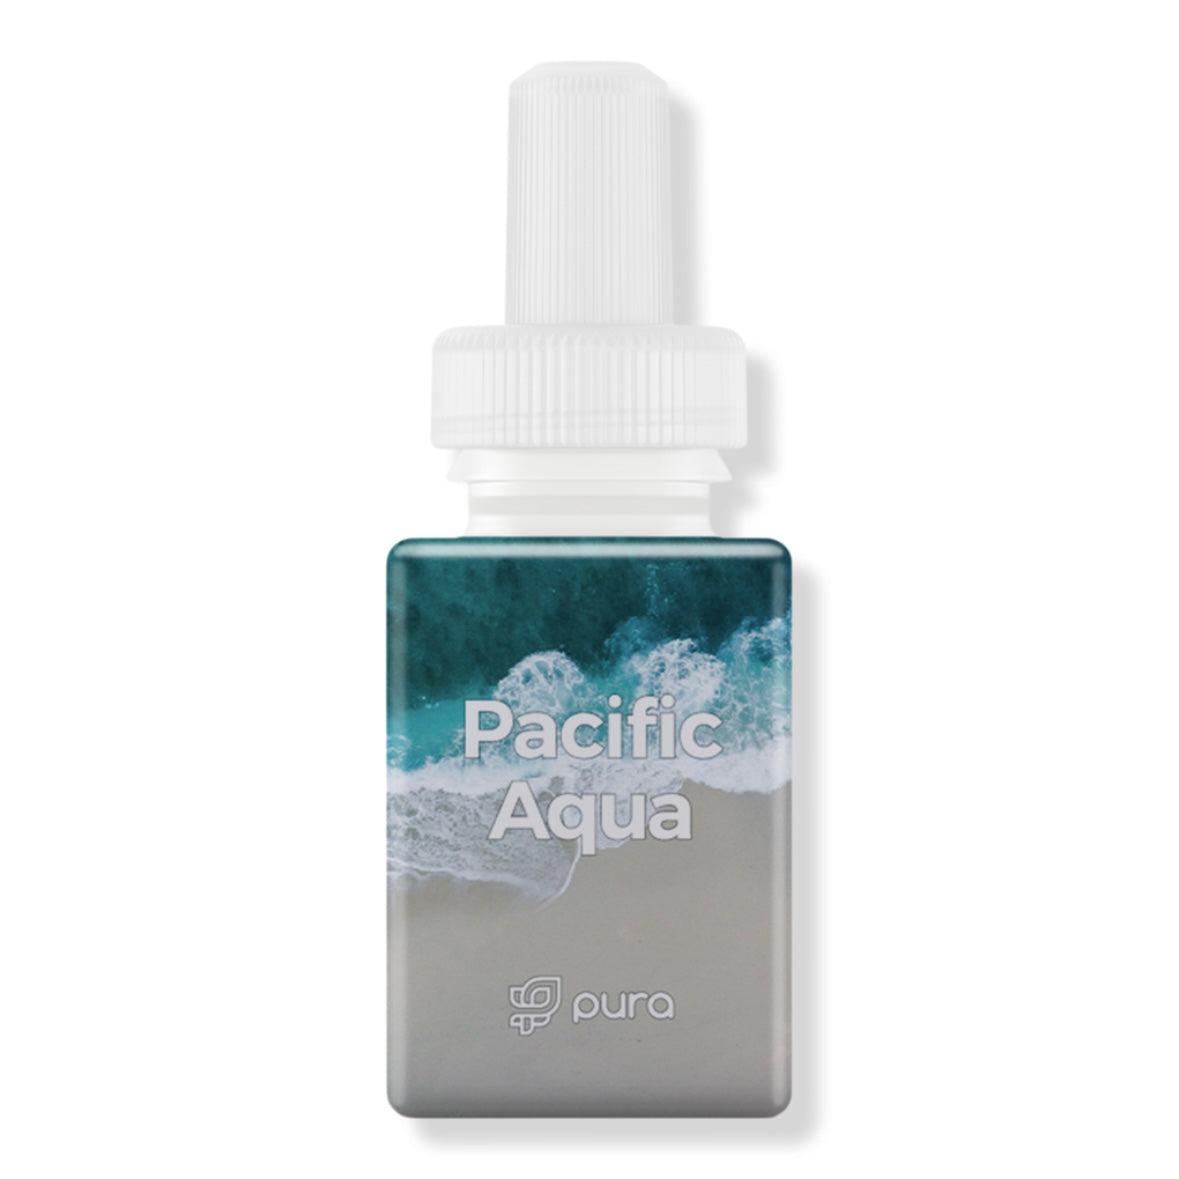 Pacific Aqua Fragrance Refill